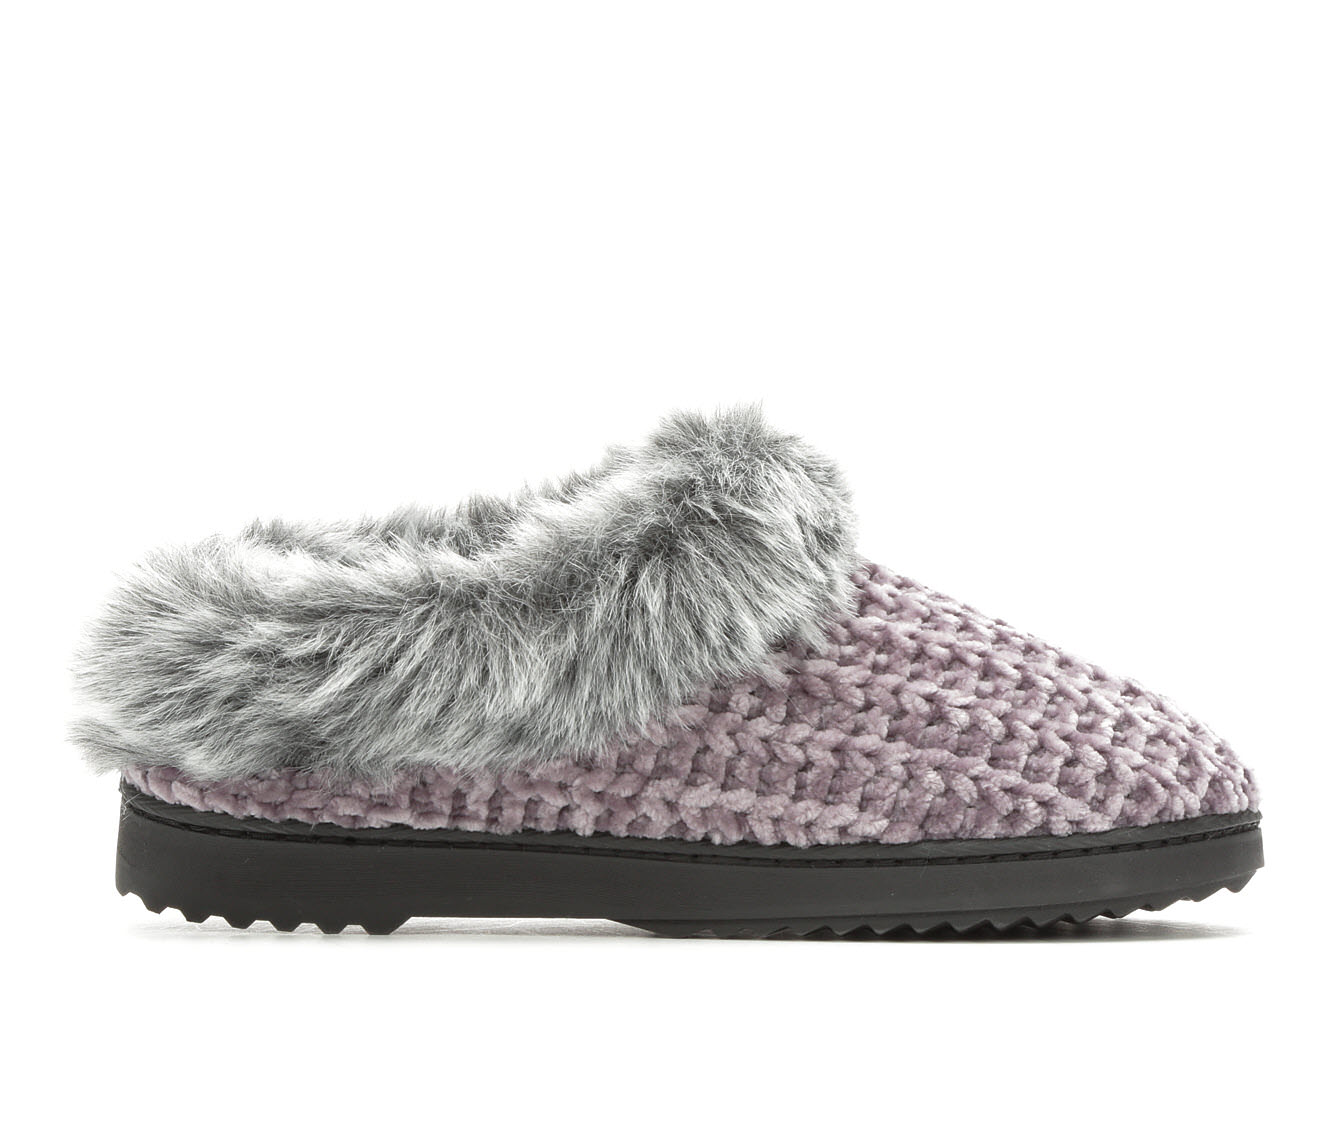 women's dearfoams chenille knit clog slippers